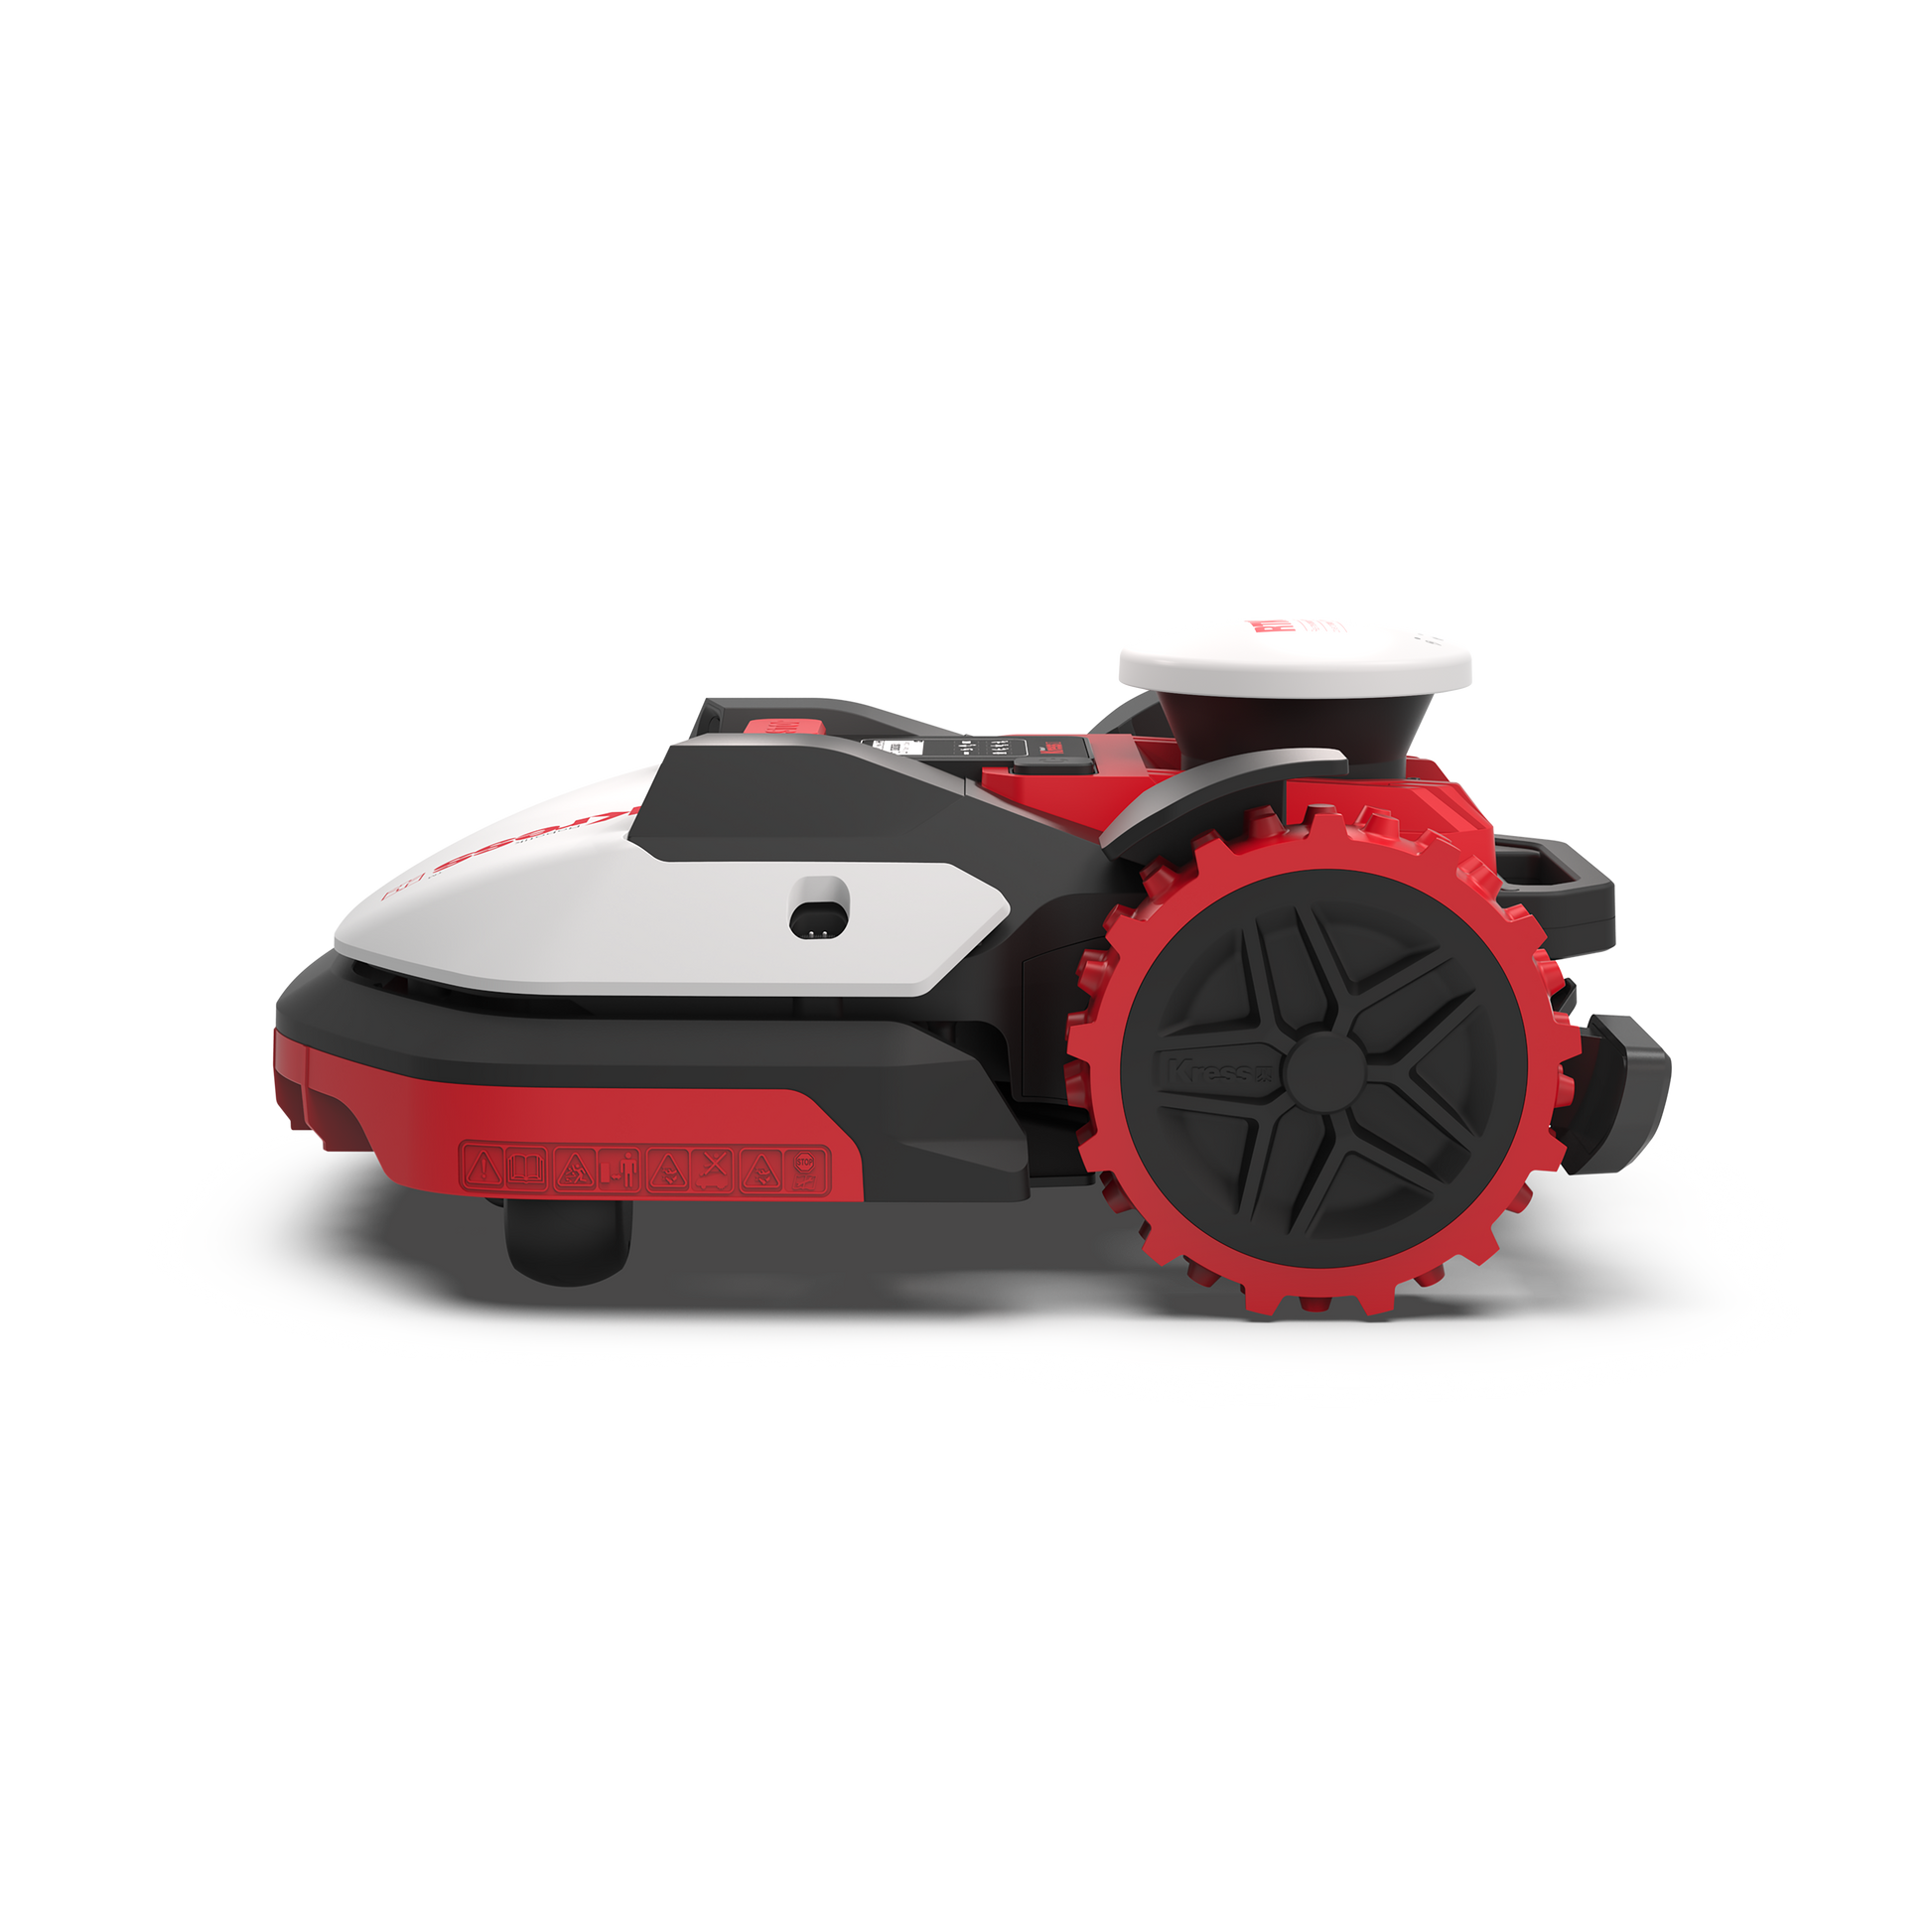 Kress KR174 Robotic mower